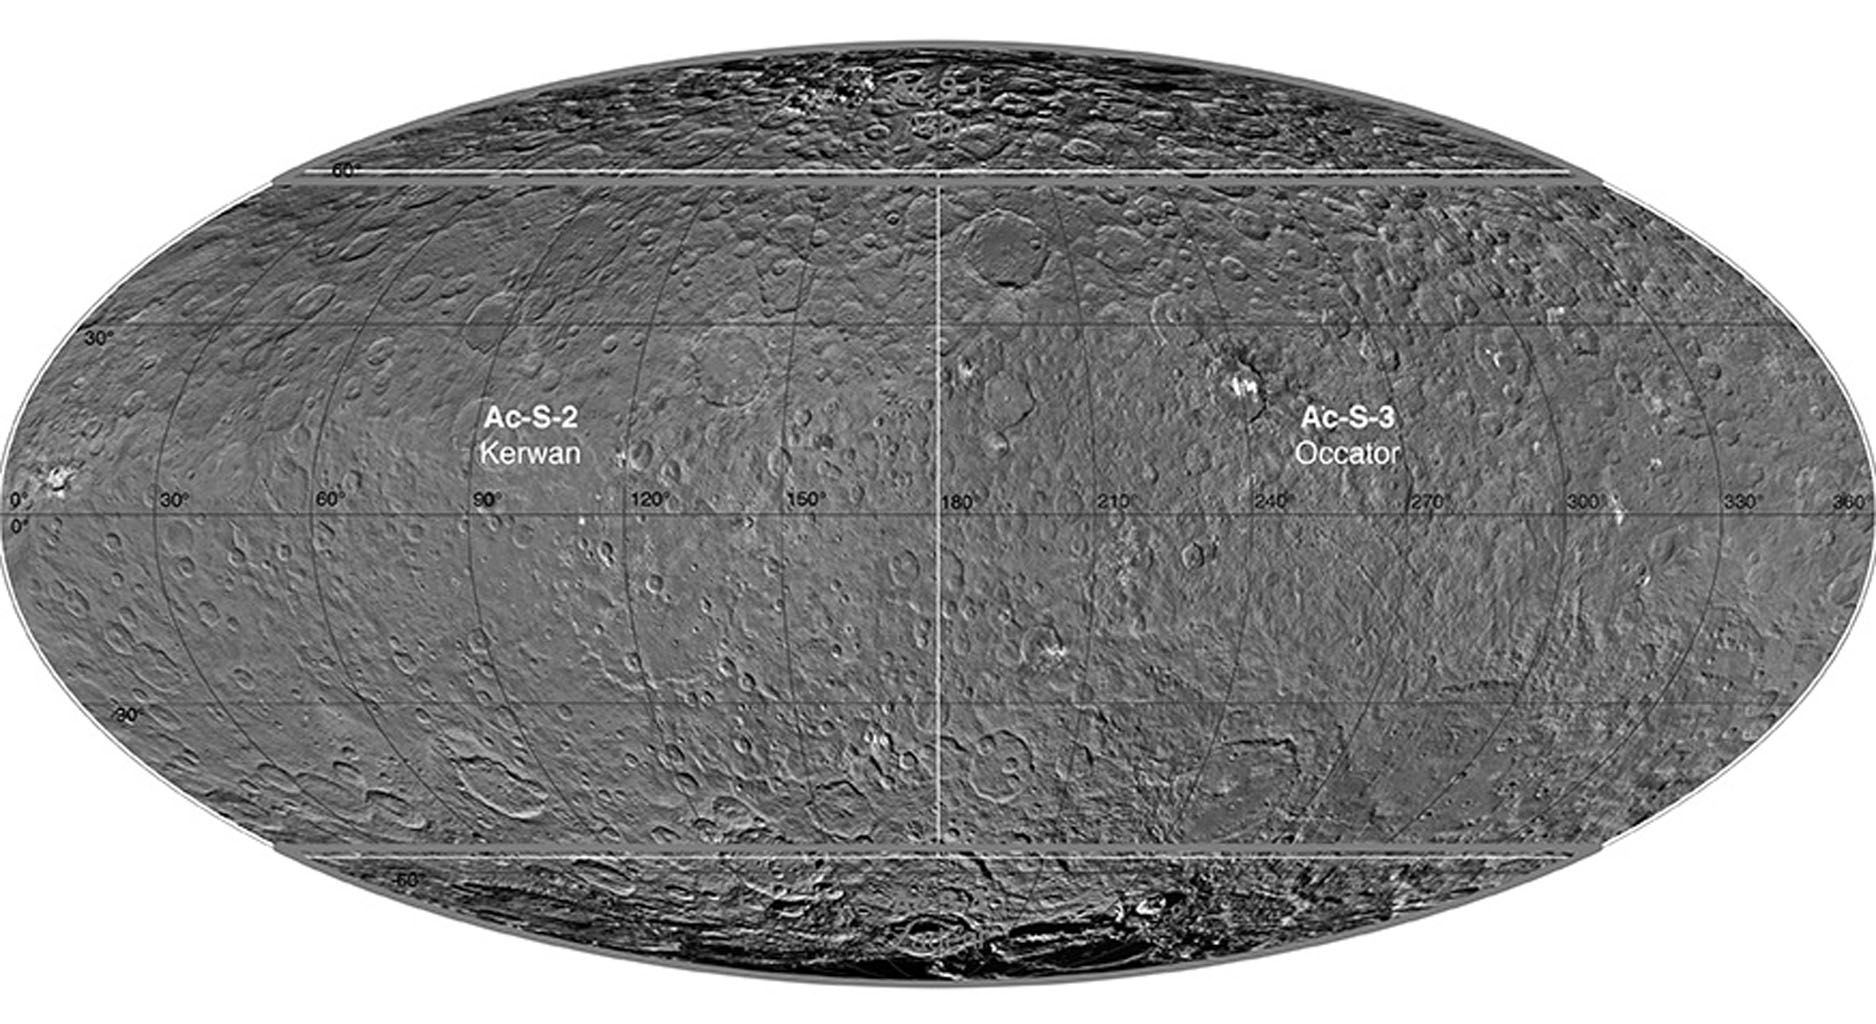 Ceres Survey Atlas